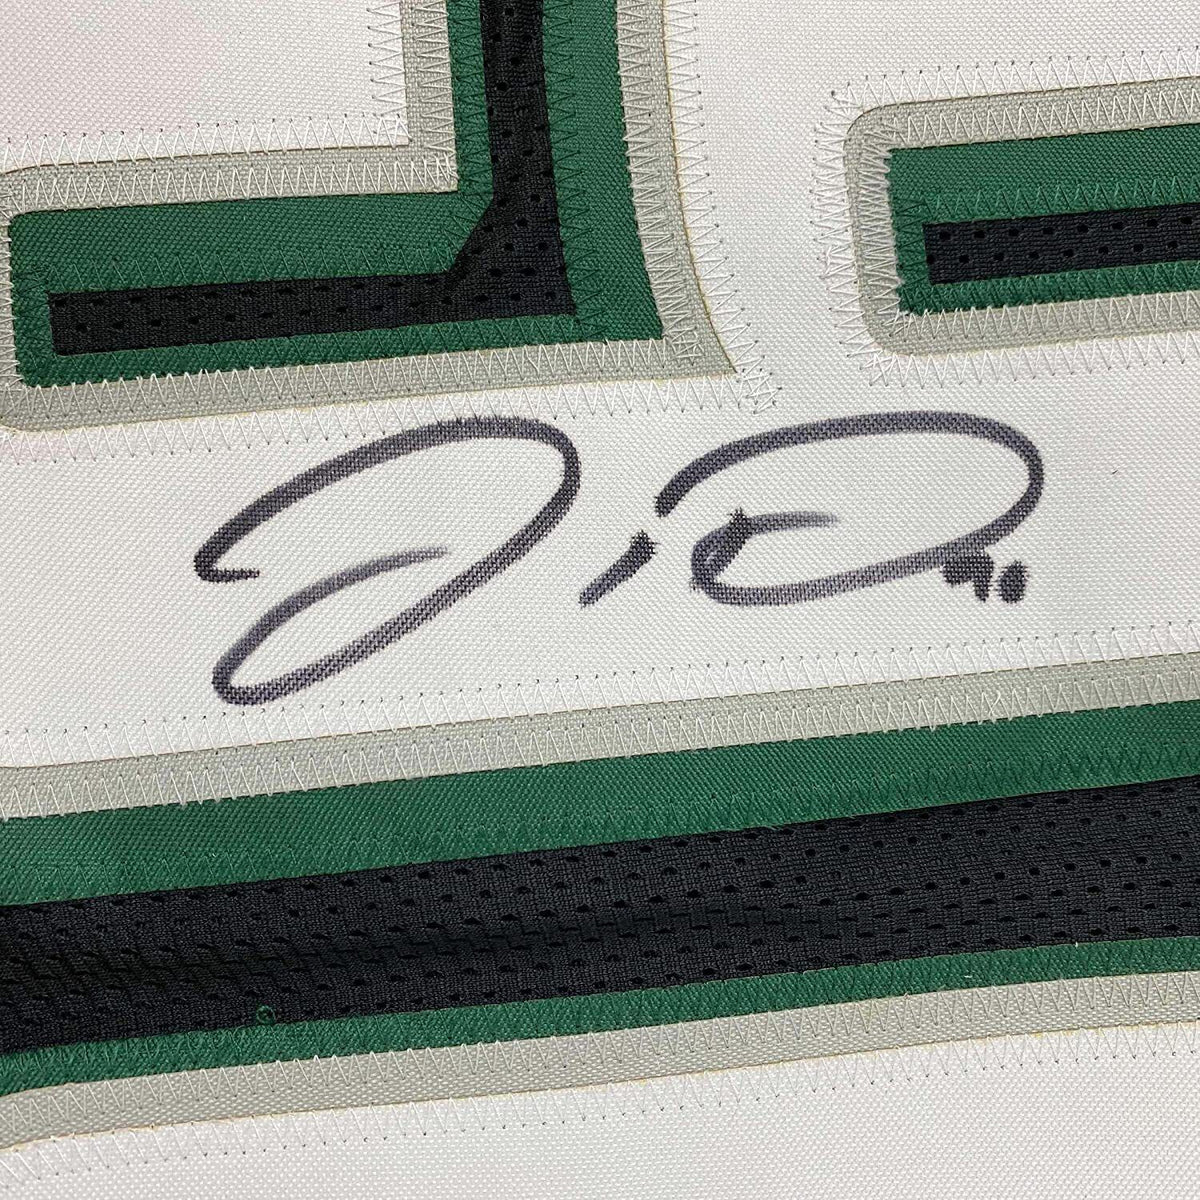 Framed Philadelphia Eagles Jordan Davis Autographed Signed Jersey